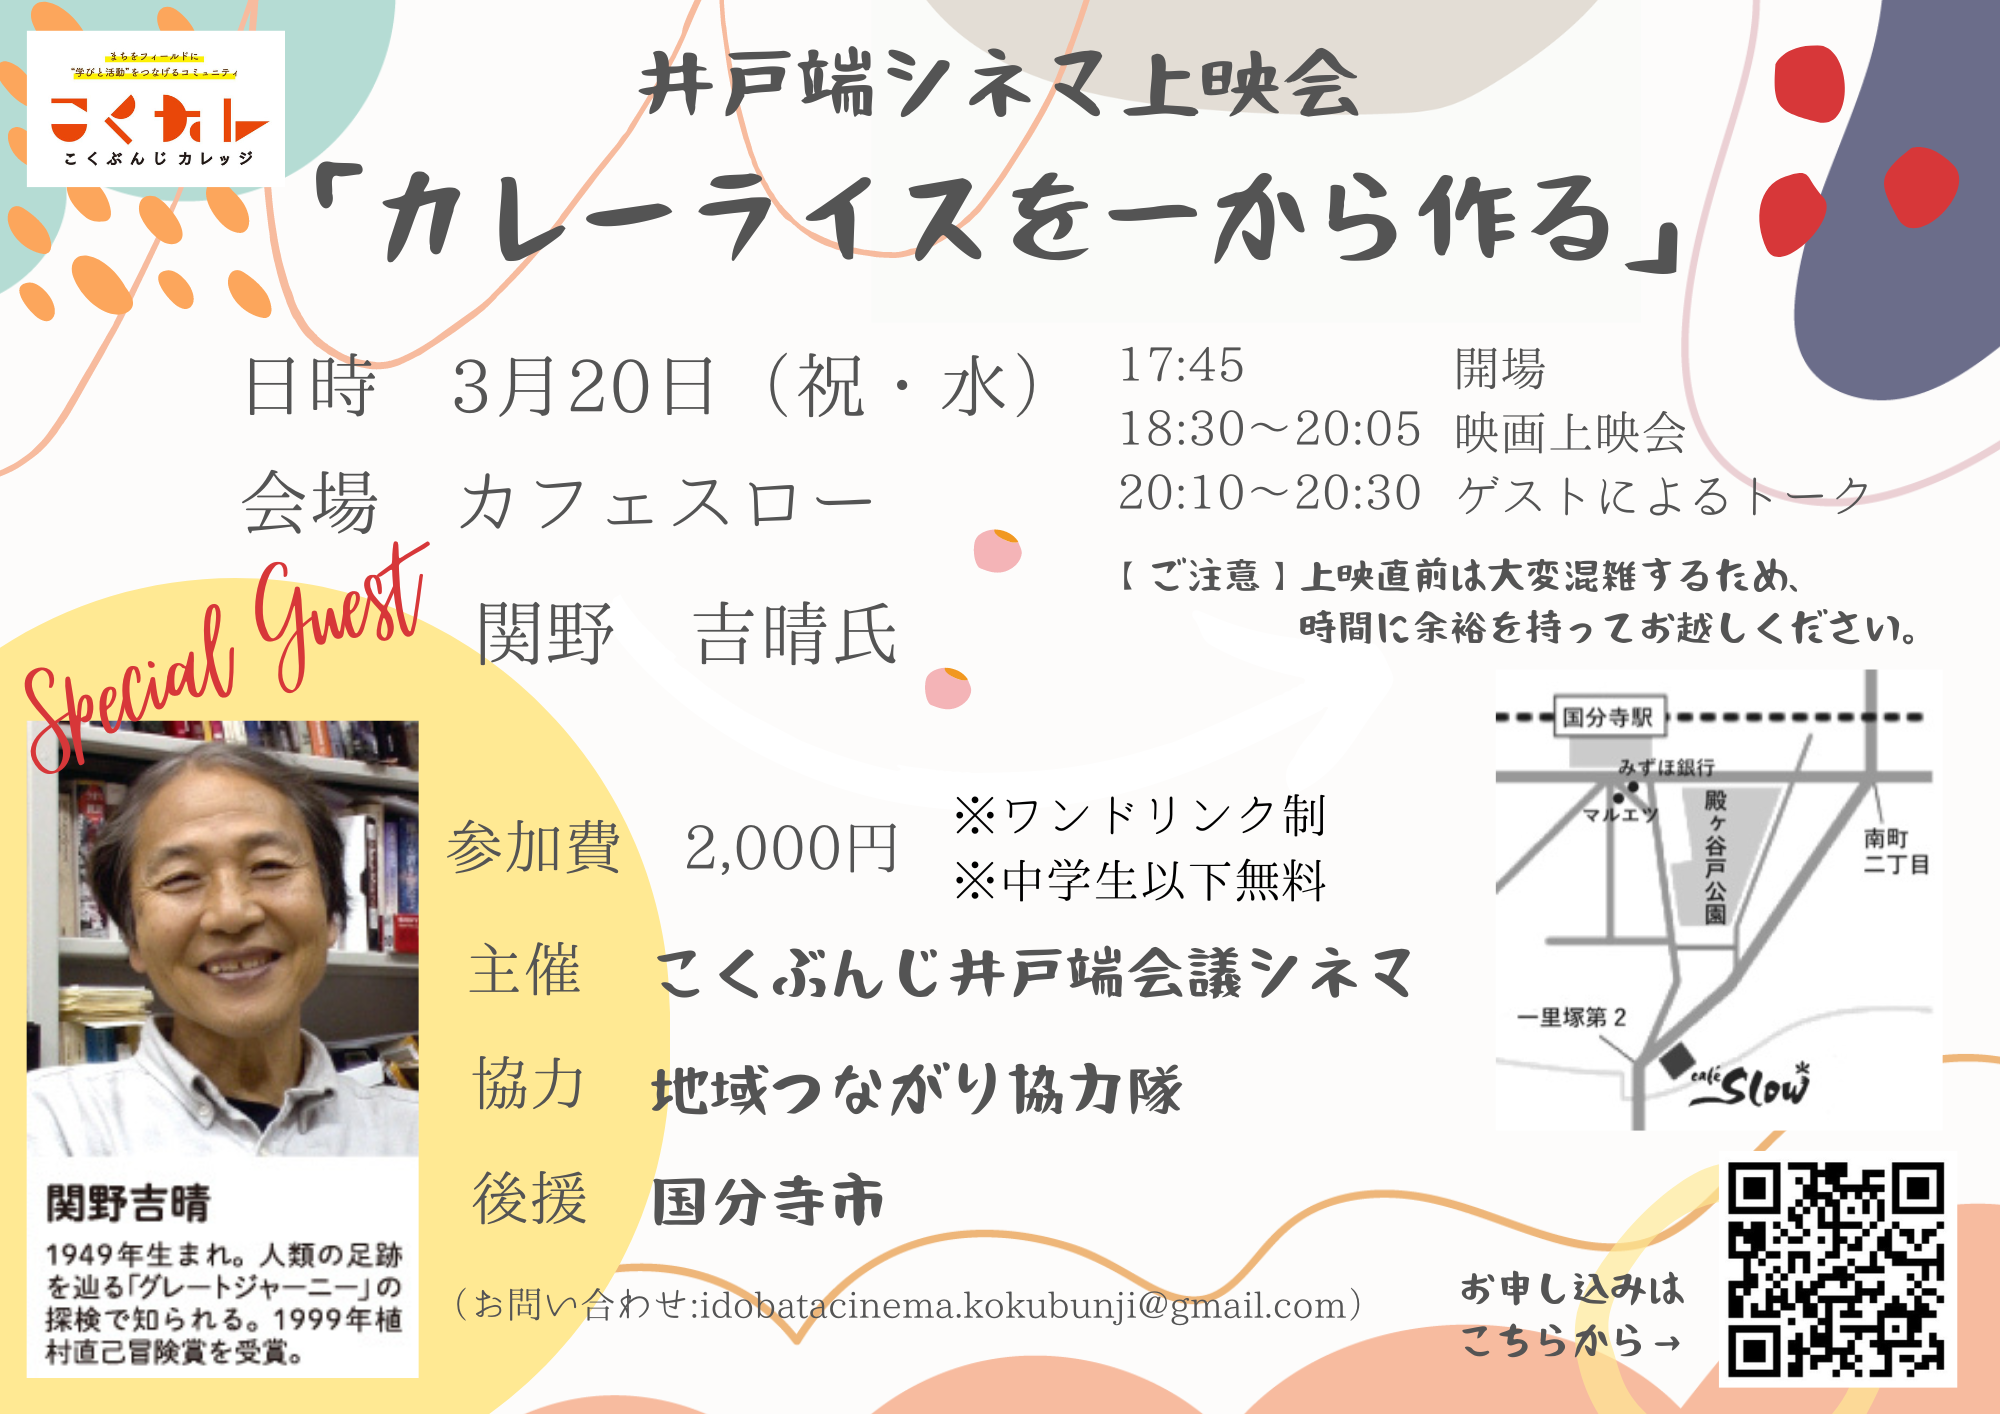 3/20(水) 「カレーライスを一から作る」上映会＋関野吉晴氏によるゲストトーク